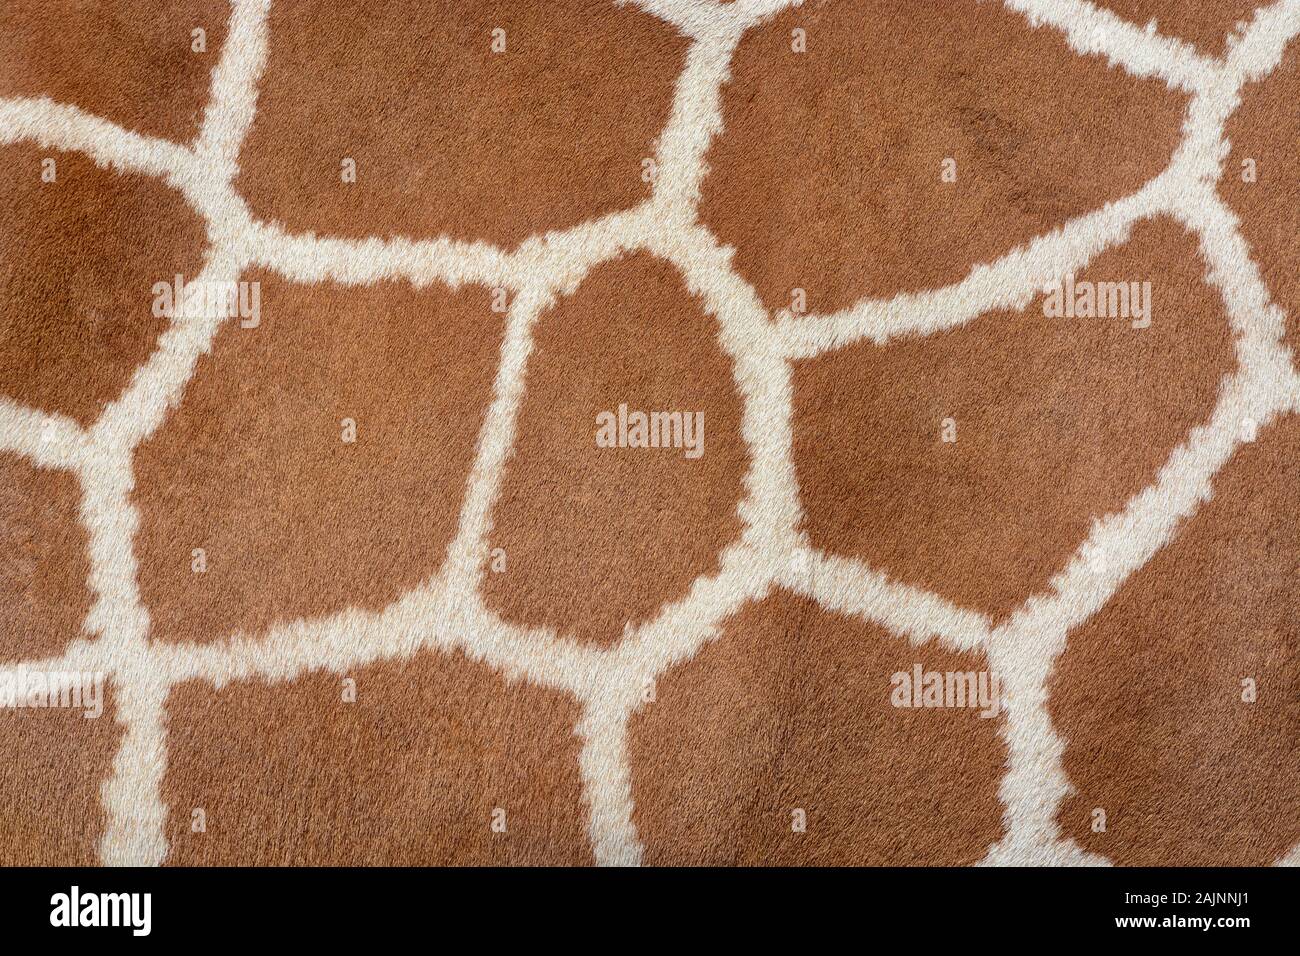 Arrière-plan de la peau des animaux à fourrure sur une texture à motifs girafe Africaine Banque D'Images